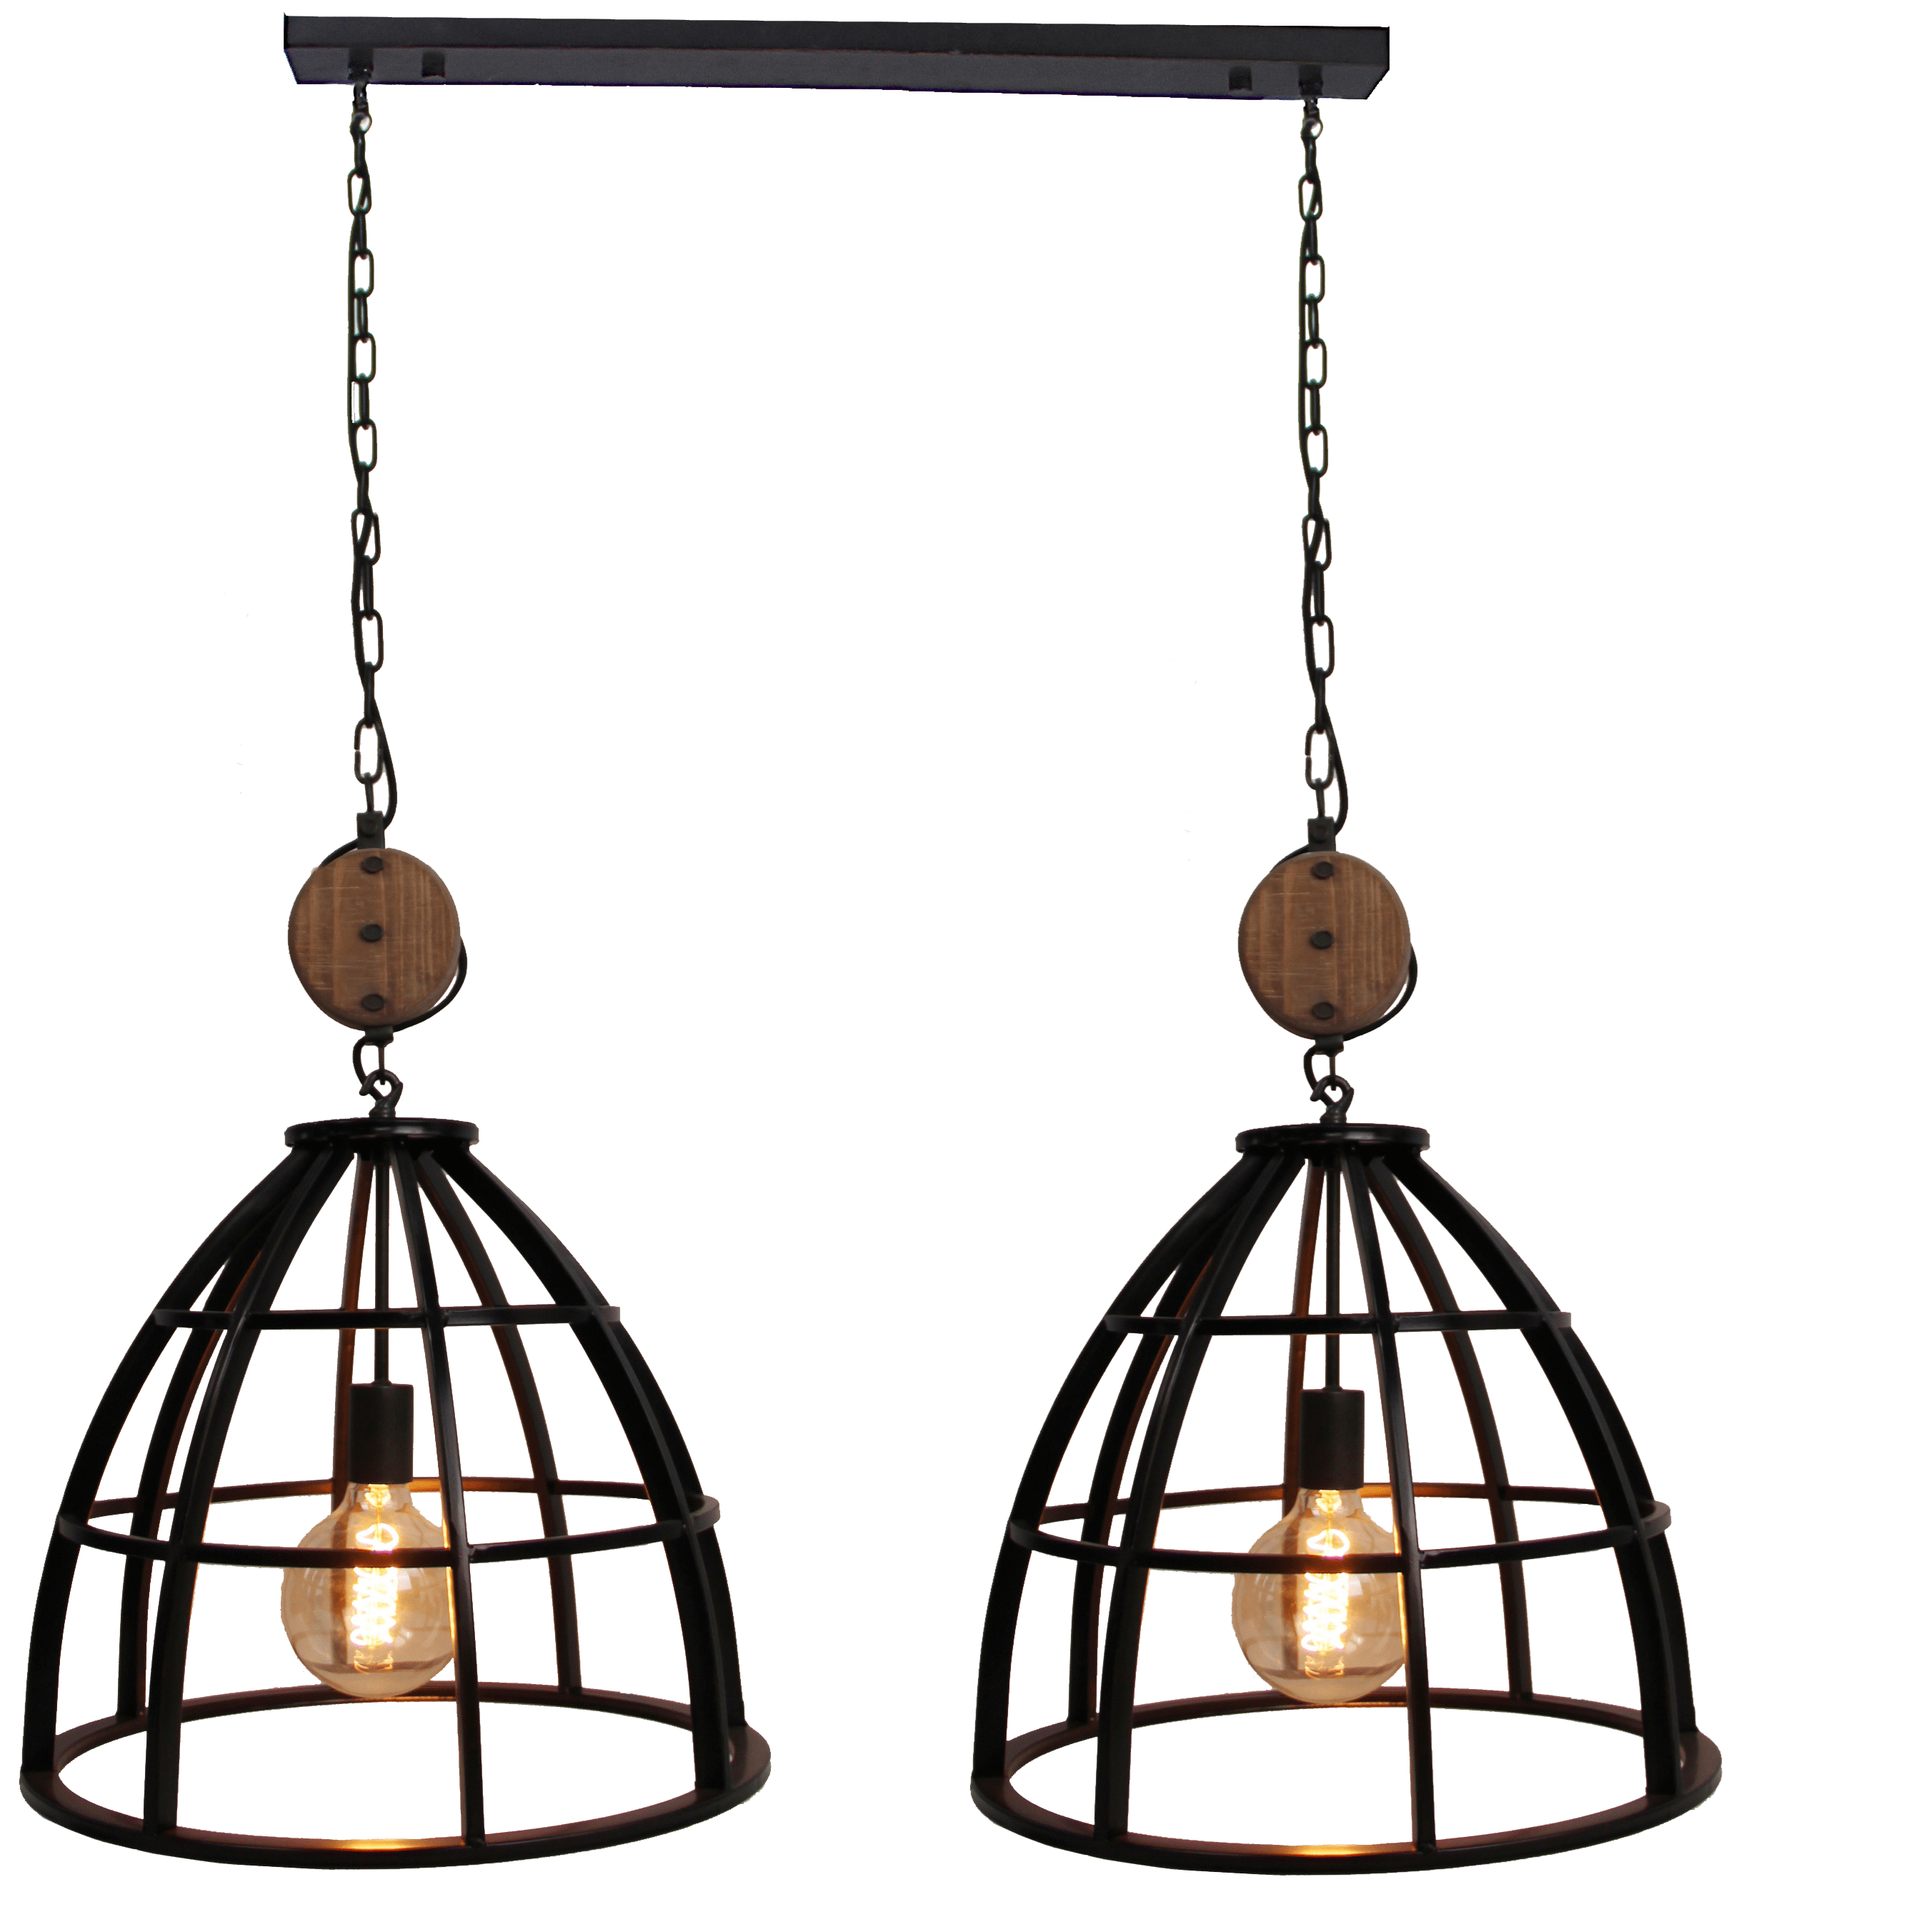 Aperto hanglamp - 2 lichts - 47 cm - zwart black steel met vintage wood